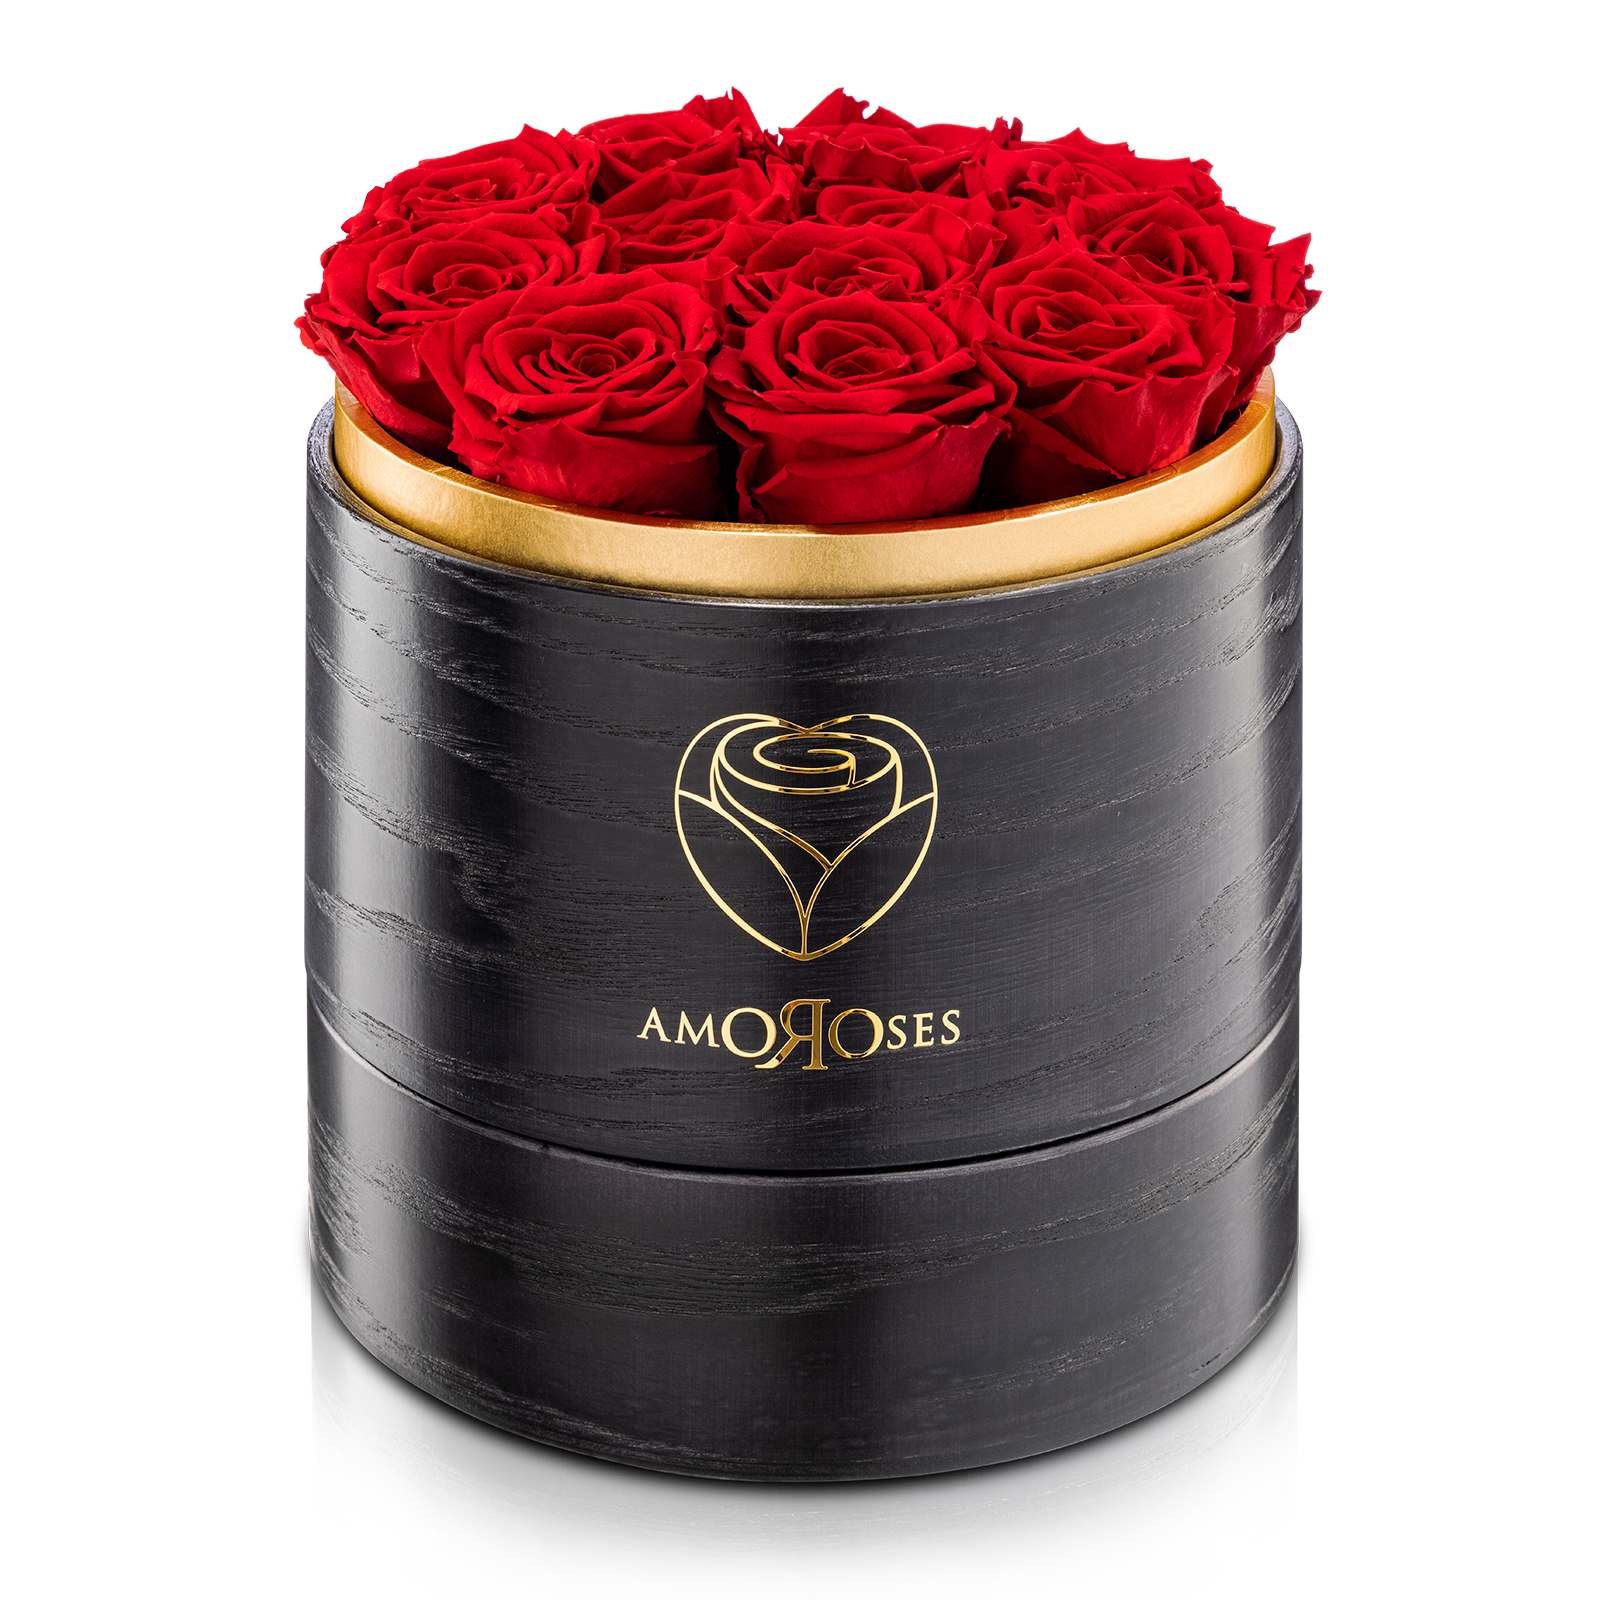 Amoroses SUPERIOR - Scatola in legno black fatta a mano con 12 rose rosse stabilizzate